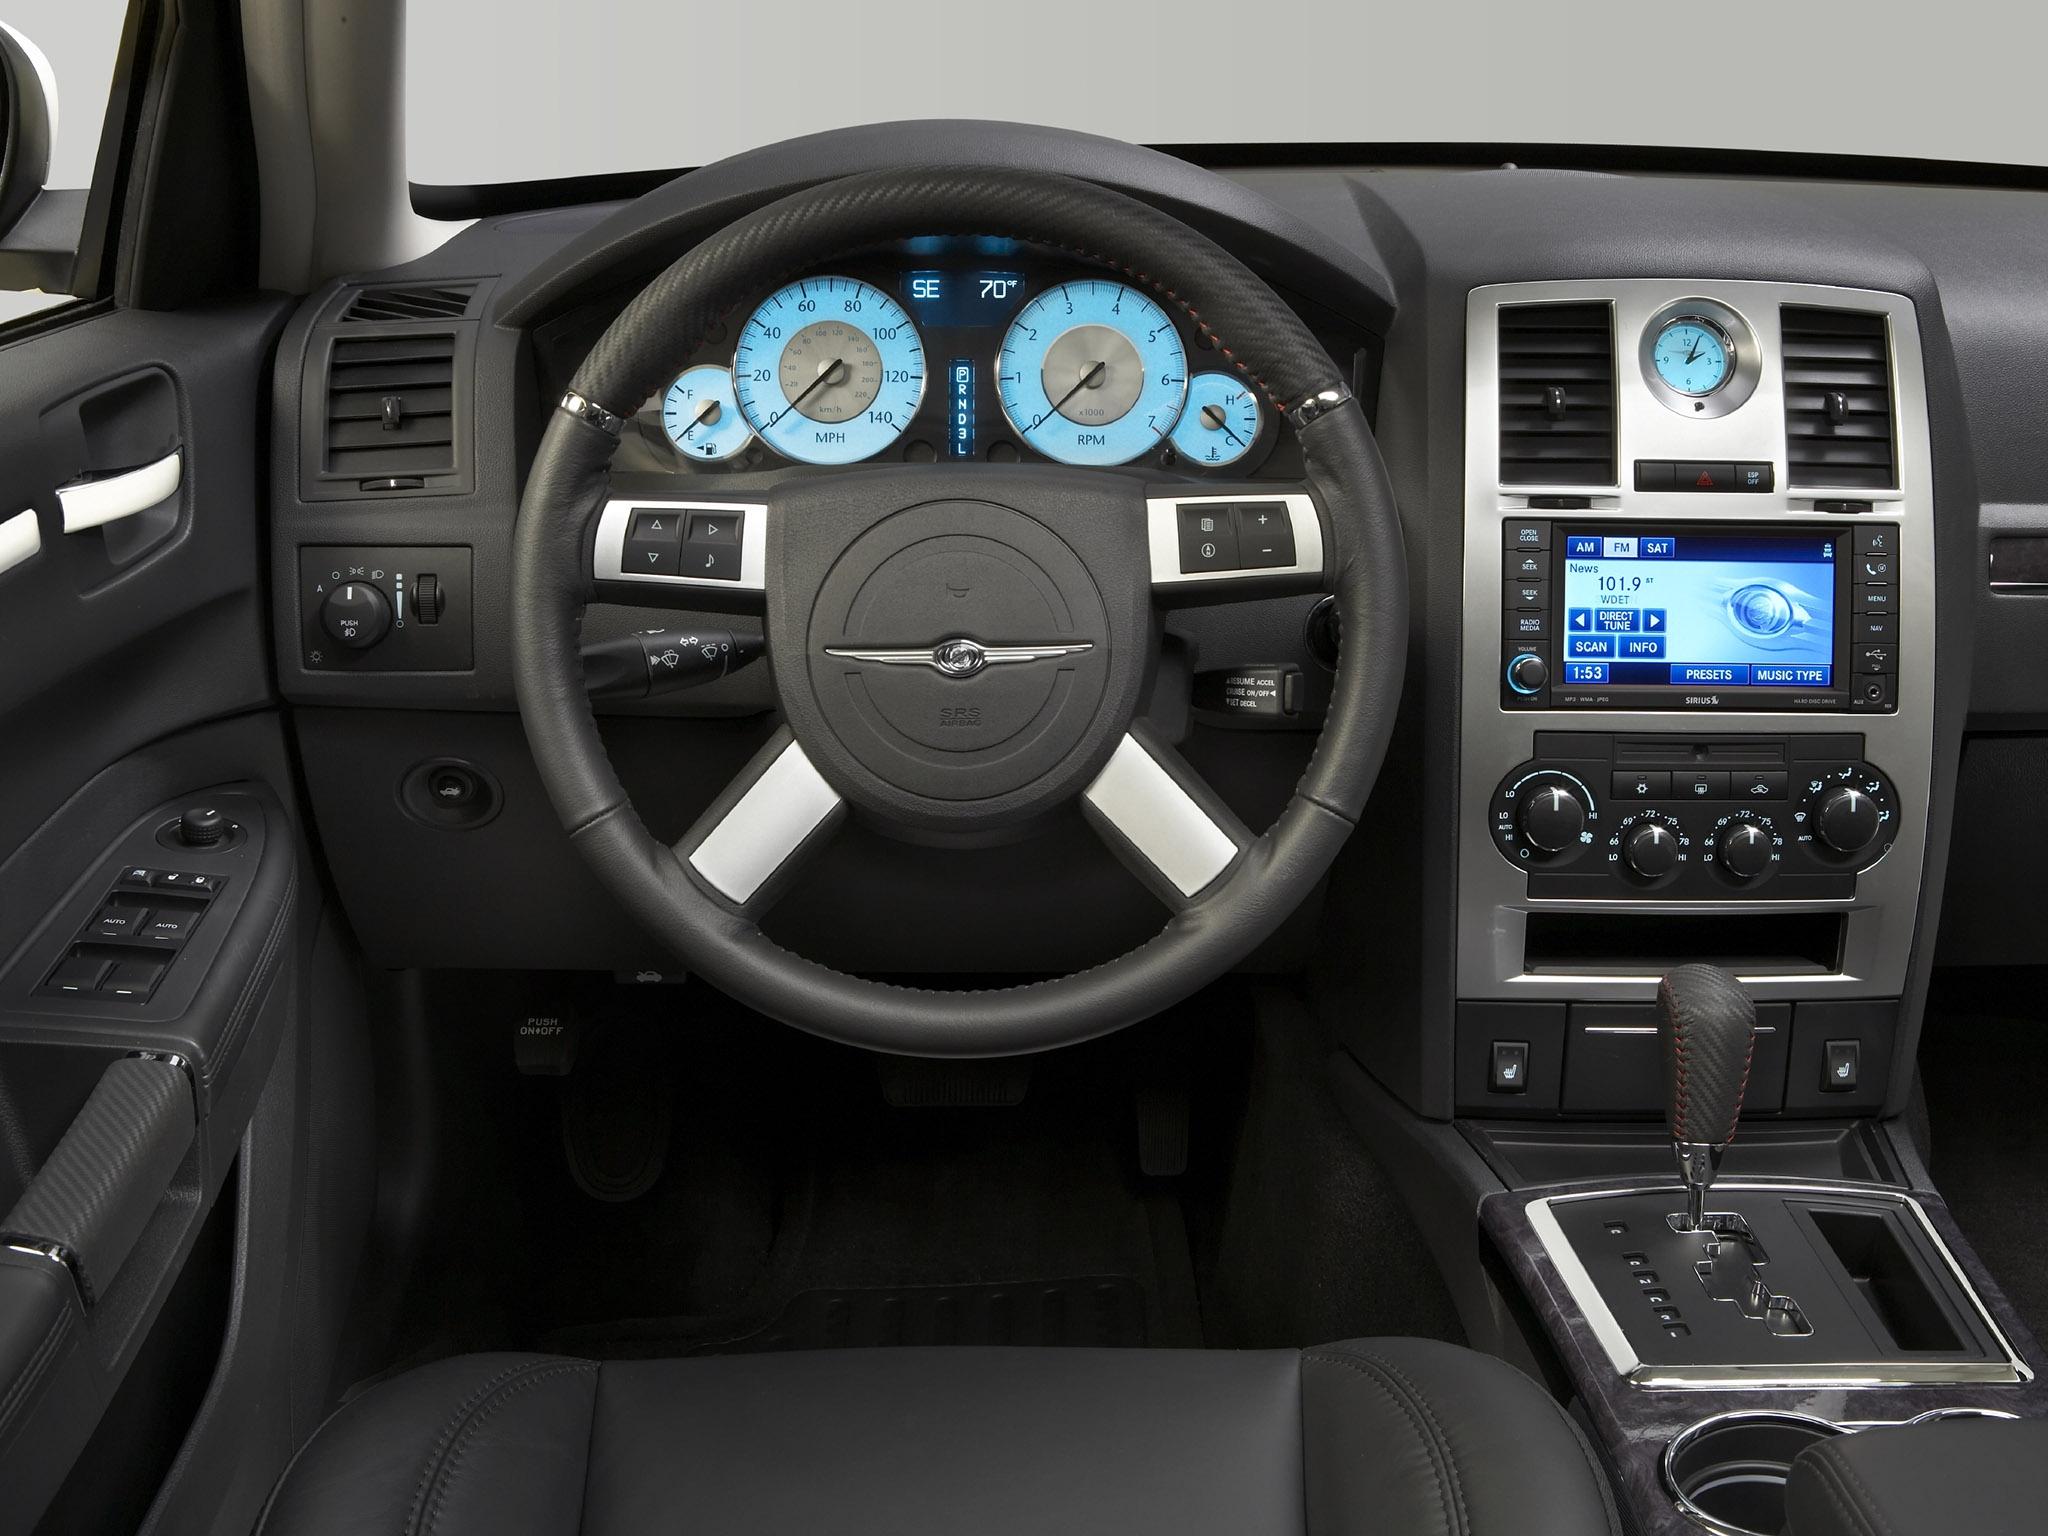 Chrysler 300c Interior Image 208 for 2011 chrysler 300 interior